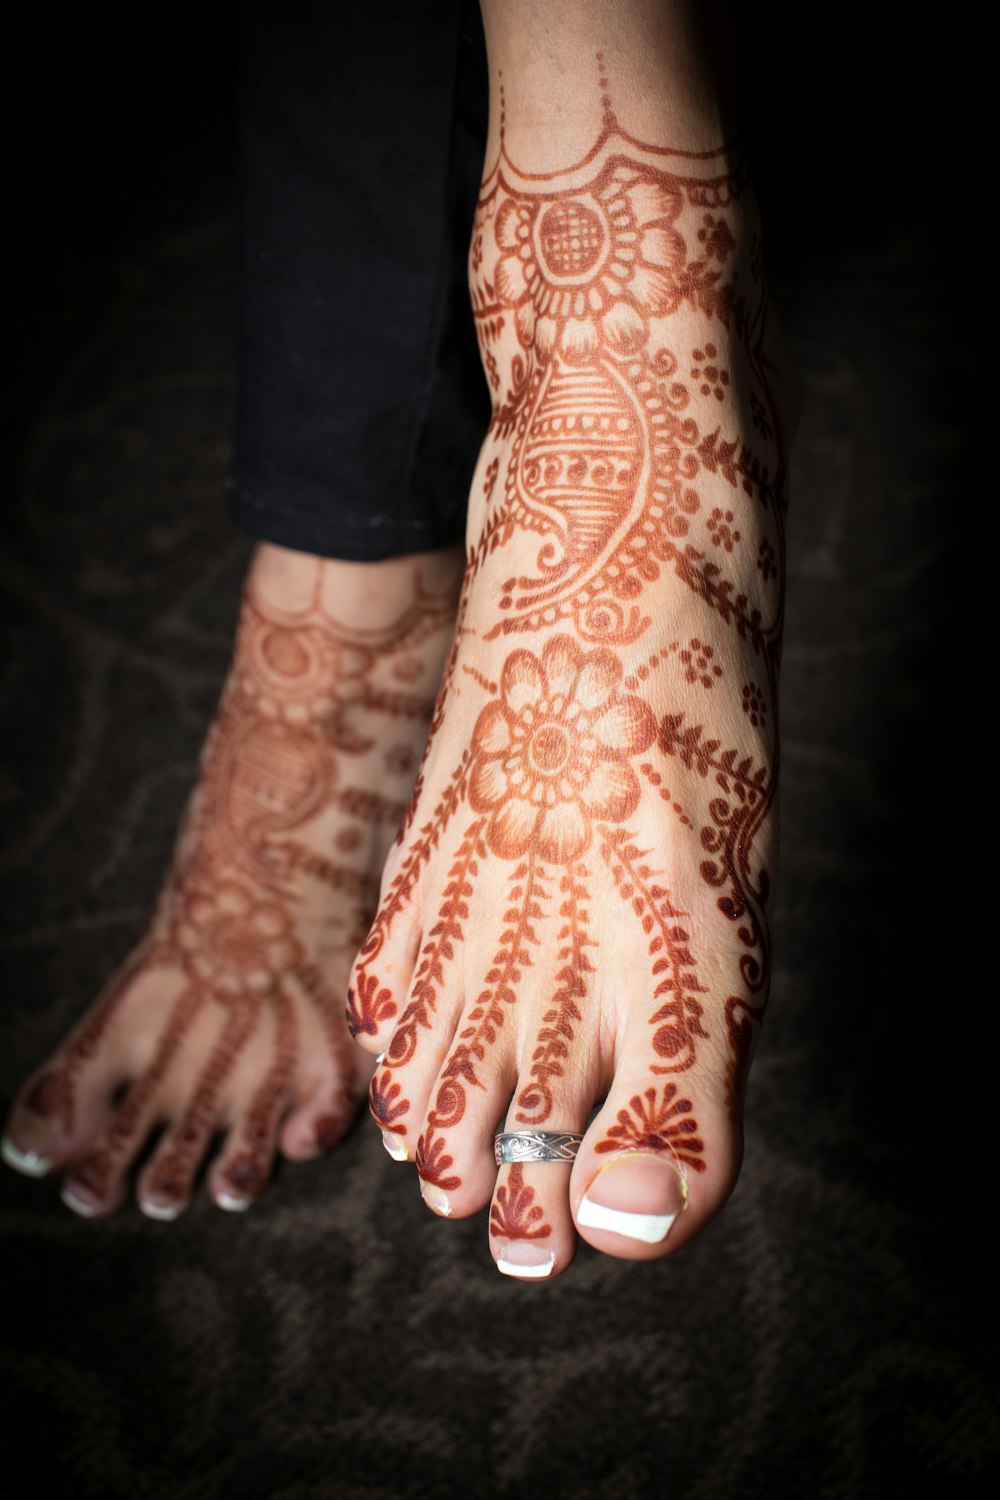 pessoa com tatuagem floral vermelha e branca na mão esquerda